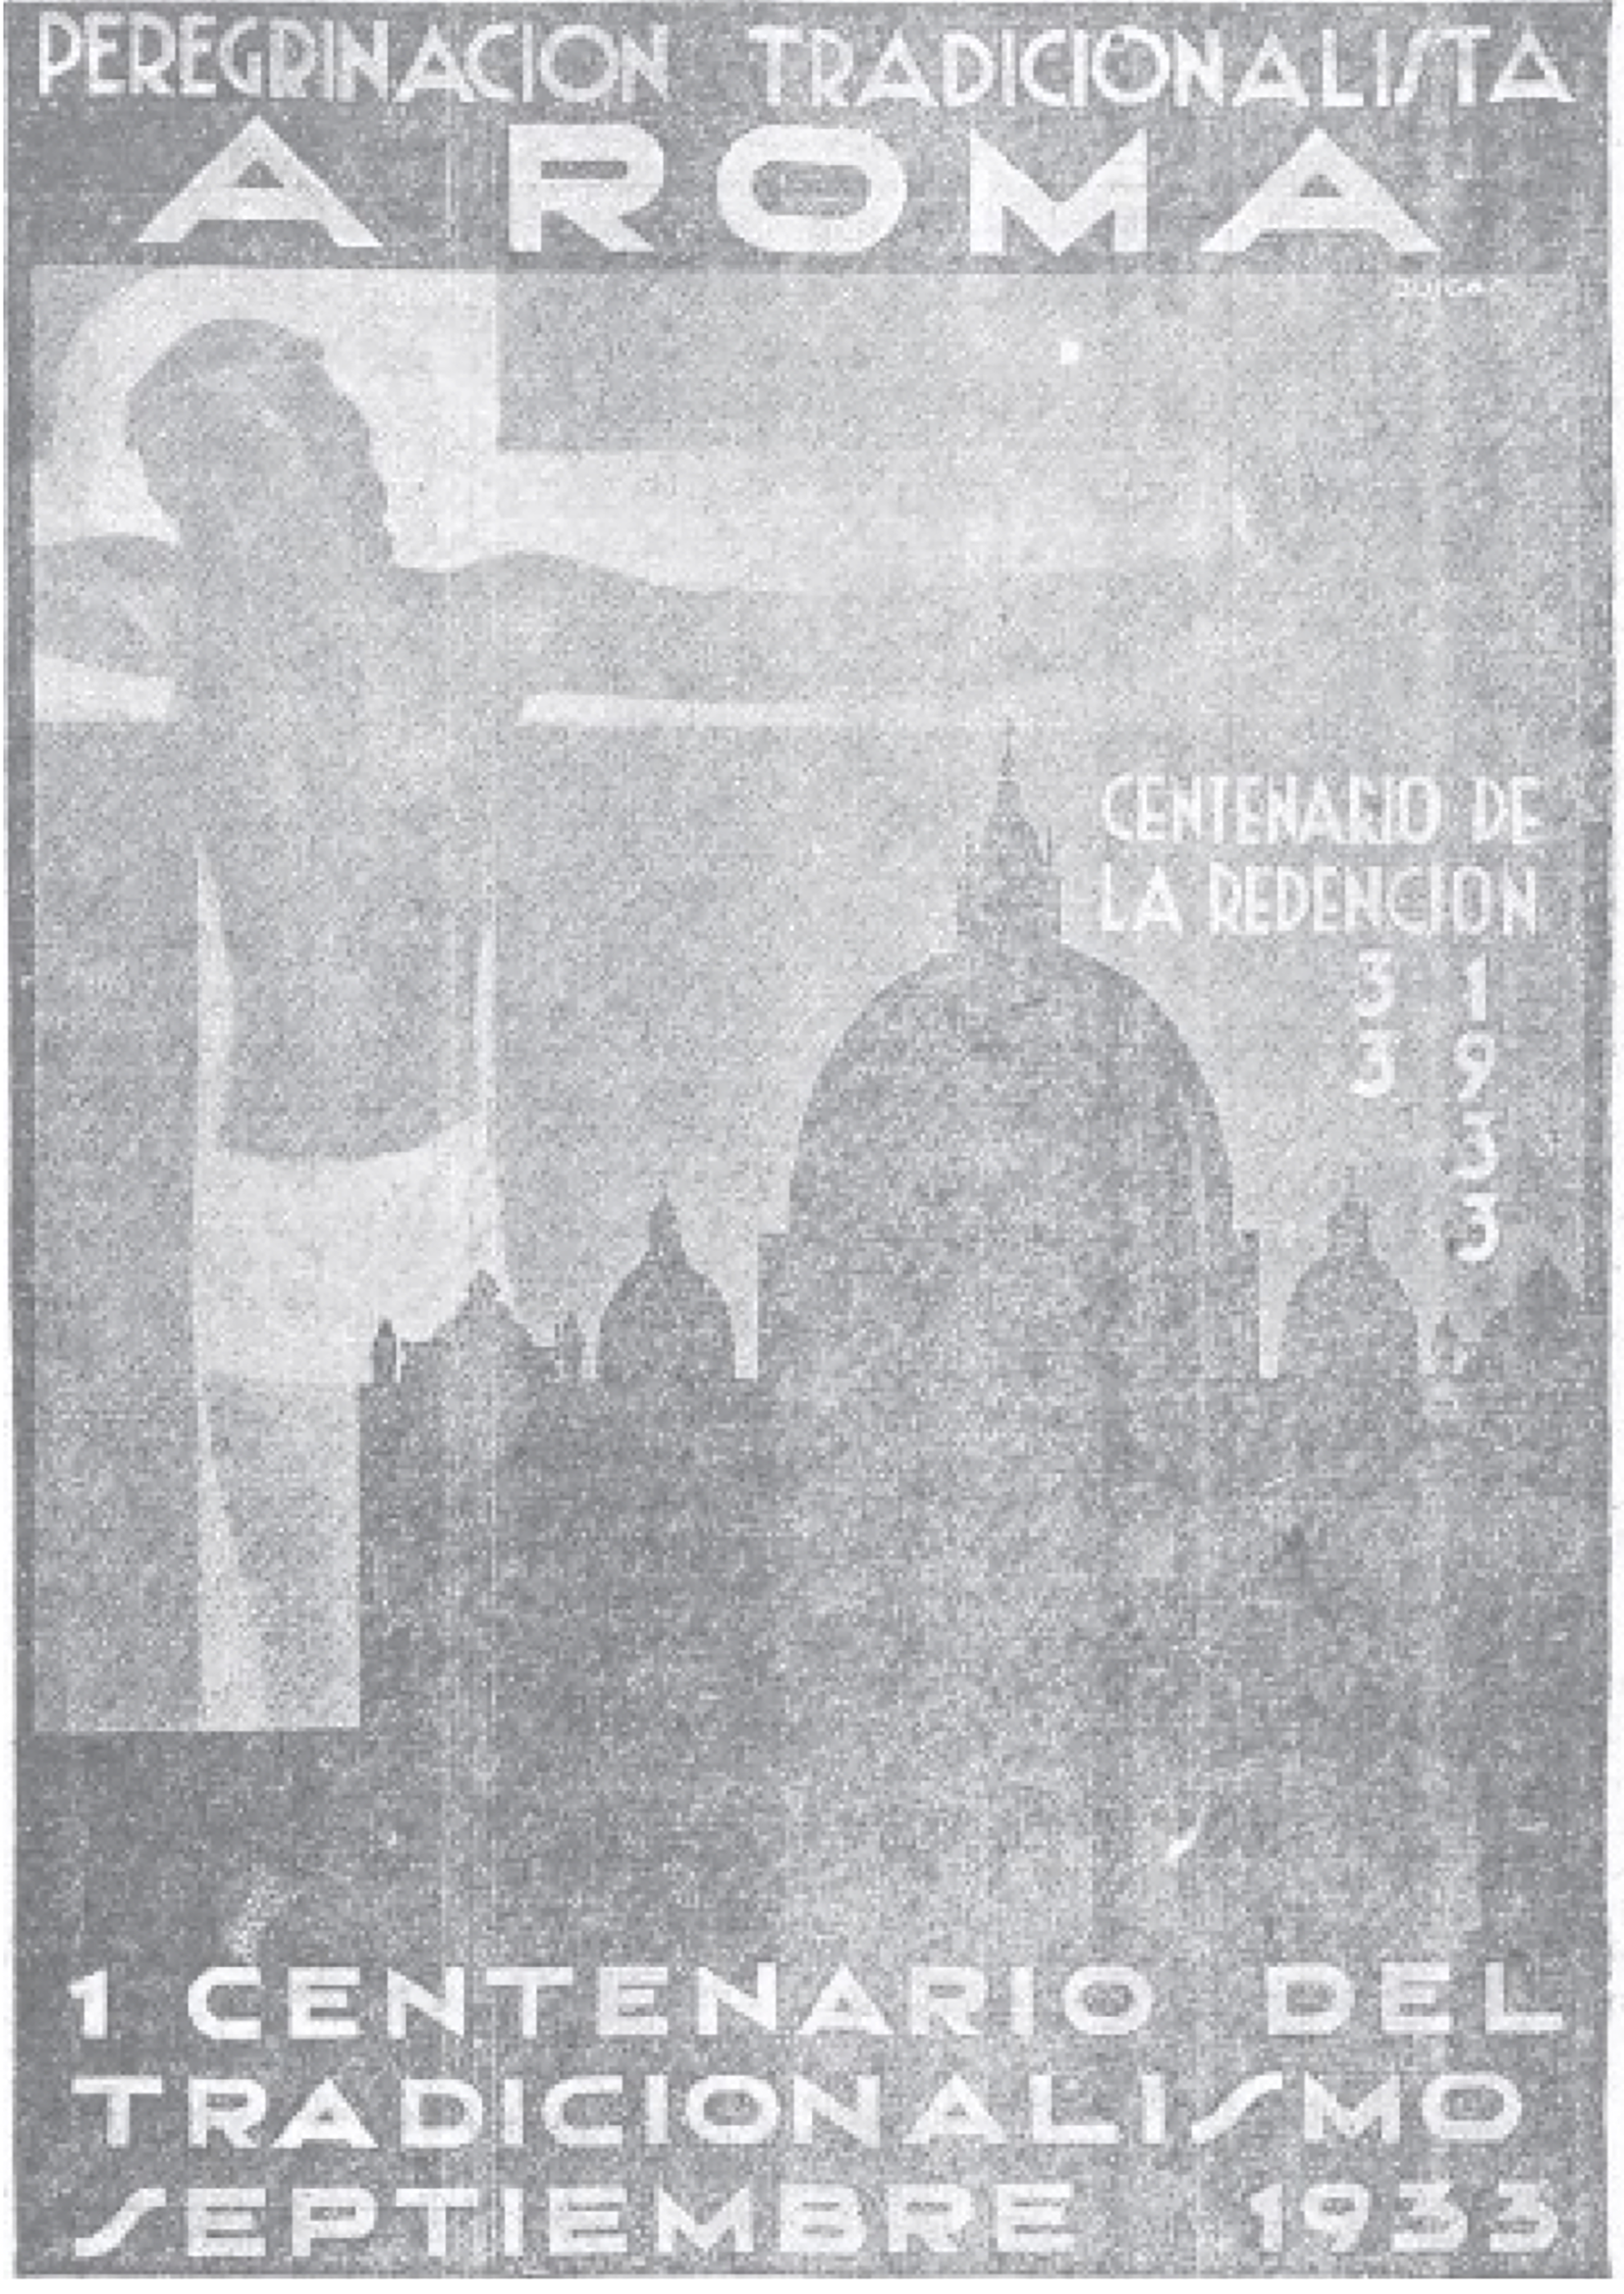 Cartel mural, editado por la Comisión organizadora de la Peregrinación Tradicionalista a Roma de septiembre de 1933, que fue profusamente difundido por las entidades carlistas y católicas de España.